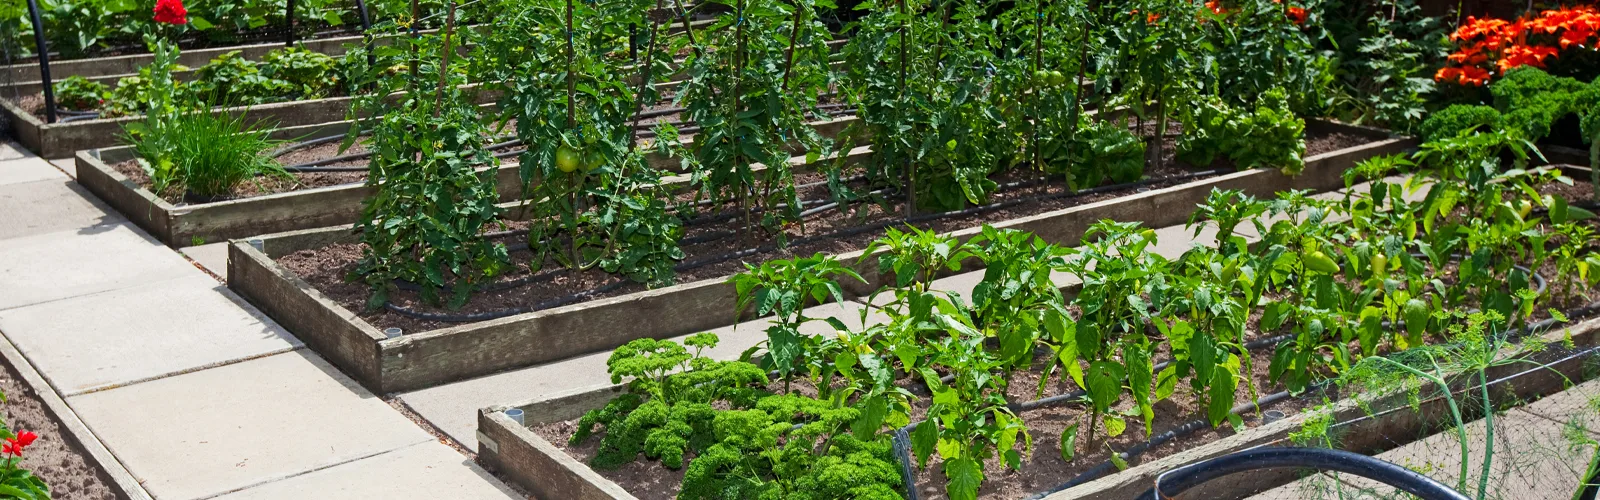 Conservez vos récoltes : la congélation et la mise en bocaux - Gamm vert